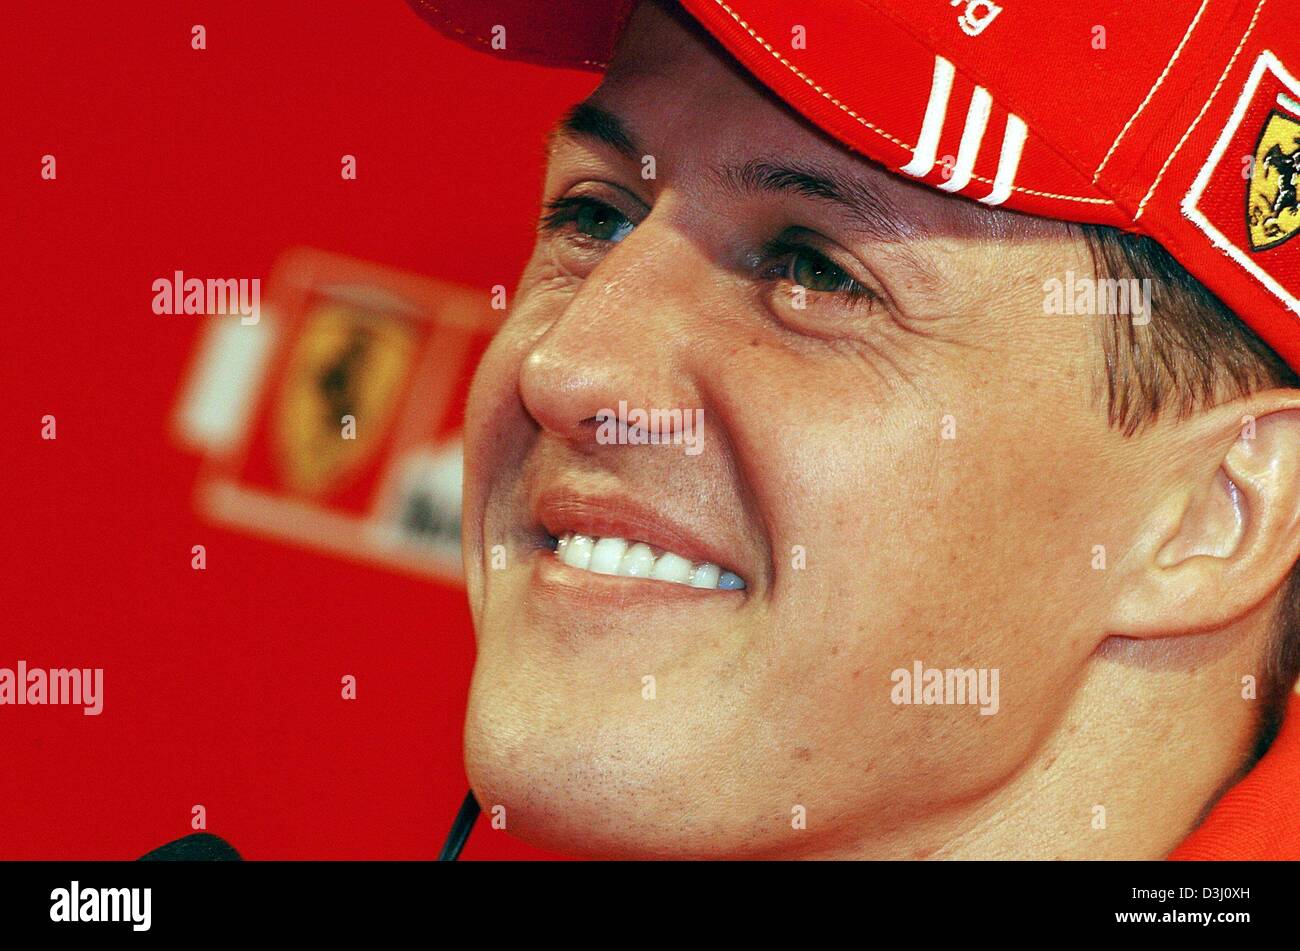 (Dpa-Dateien) Formel 1 Weltmeister Michael Schumacher lacht während einer Pressekonferenz in Madonna di Campiglio, nördlichen Italien (Datei Foto vom 15.01.2004).  Der sechsfache Weltmeister ist scharf auf die Saison 2004/2005 und räumt ein, "Ich bin hungrig wie ich am Anfang meiner Karriere war und den Titel wieder gewinnen wollen". Stockfoto